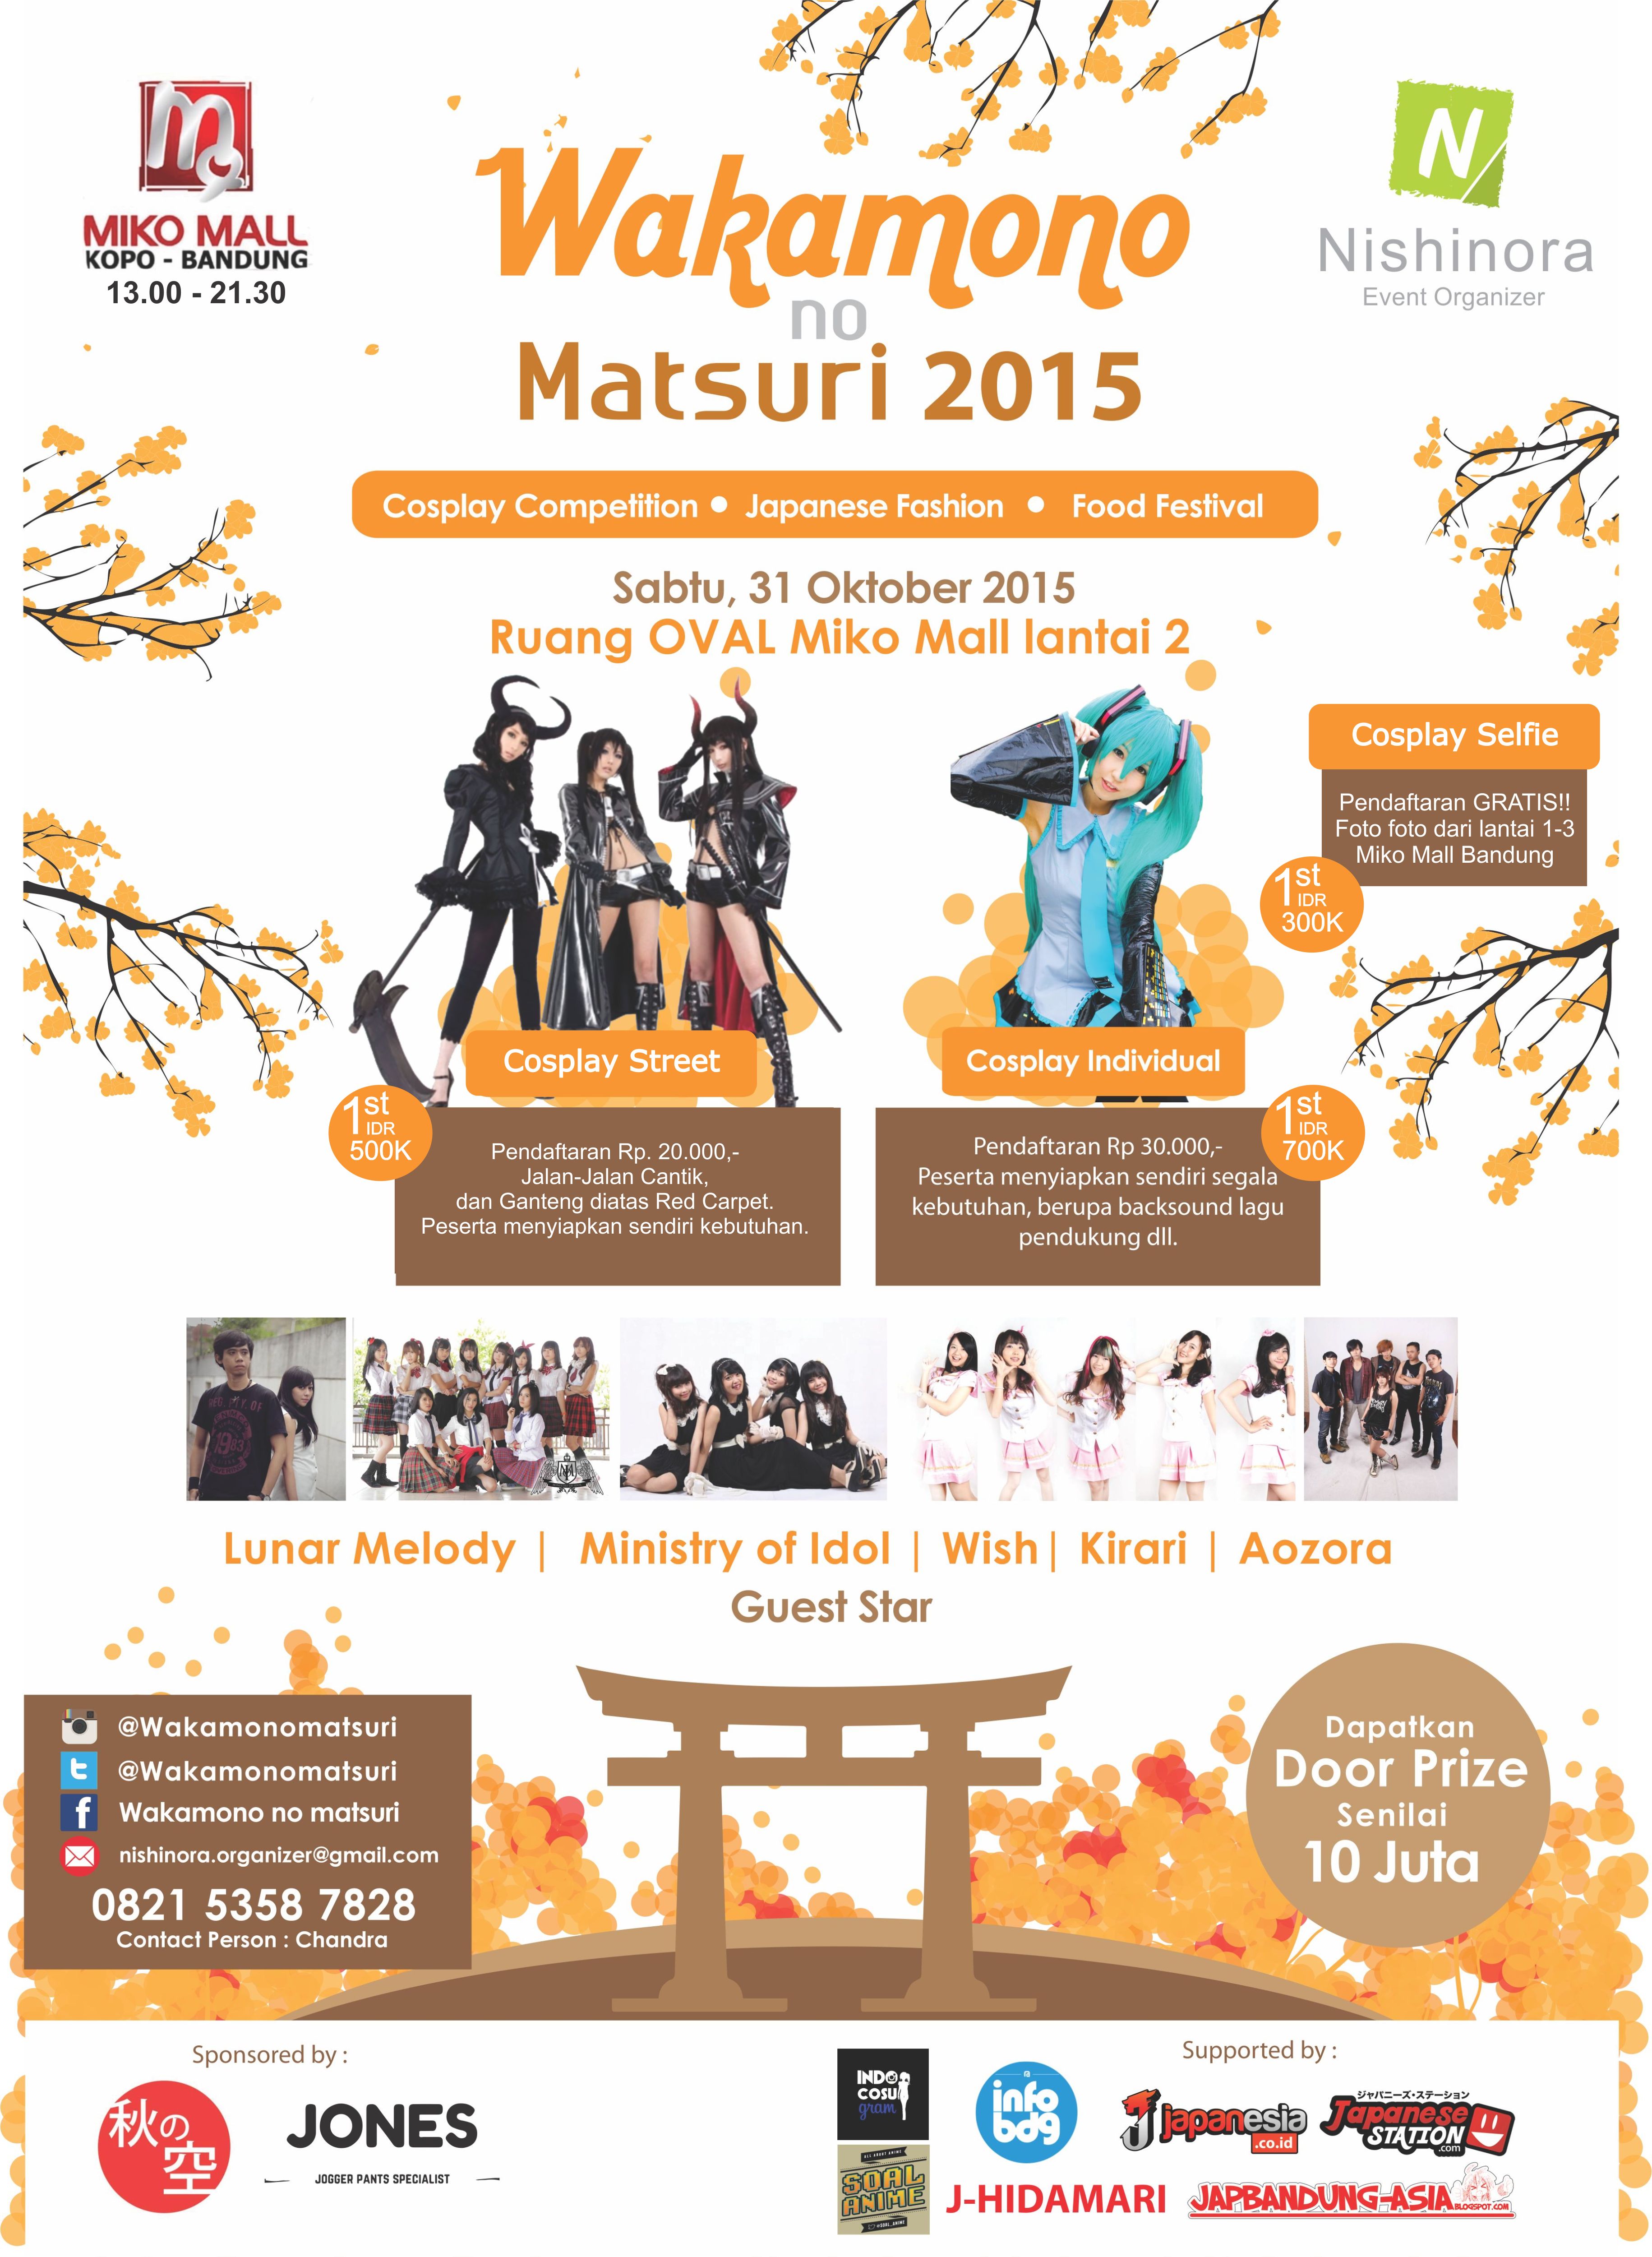 31 Oktober 2015 - Wakamono No Matsuri - Miko Mall Bandung